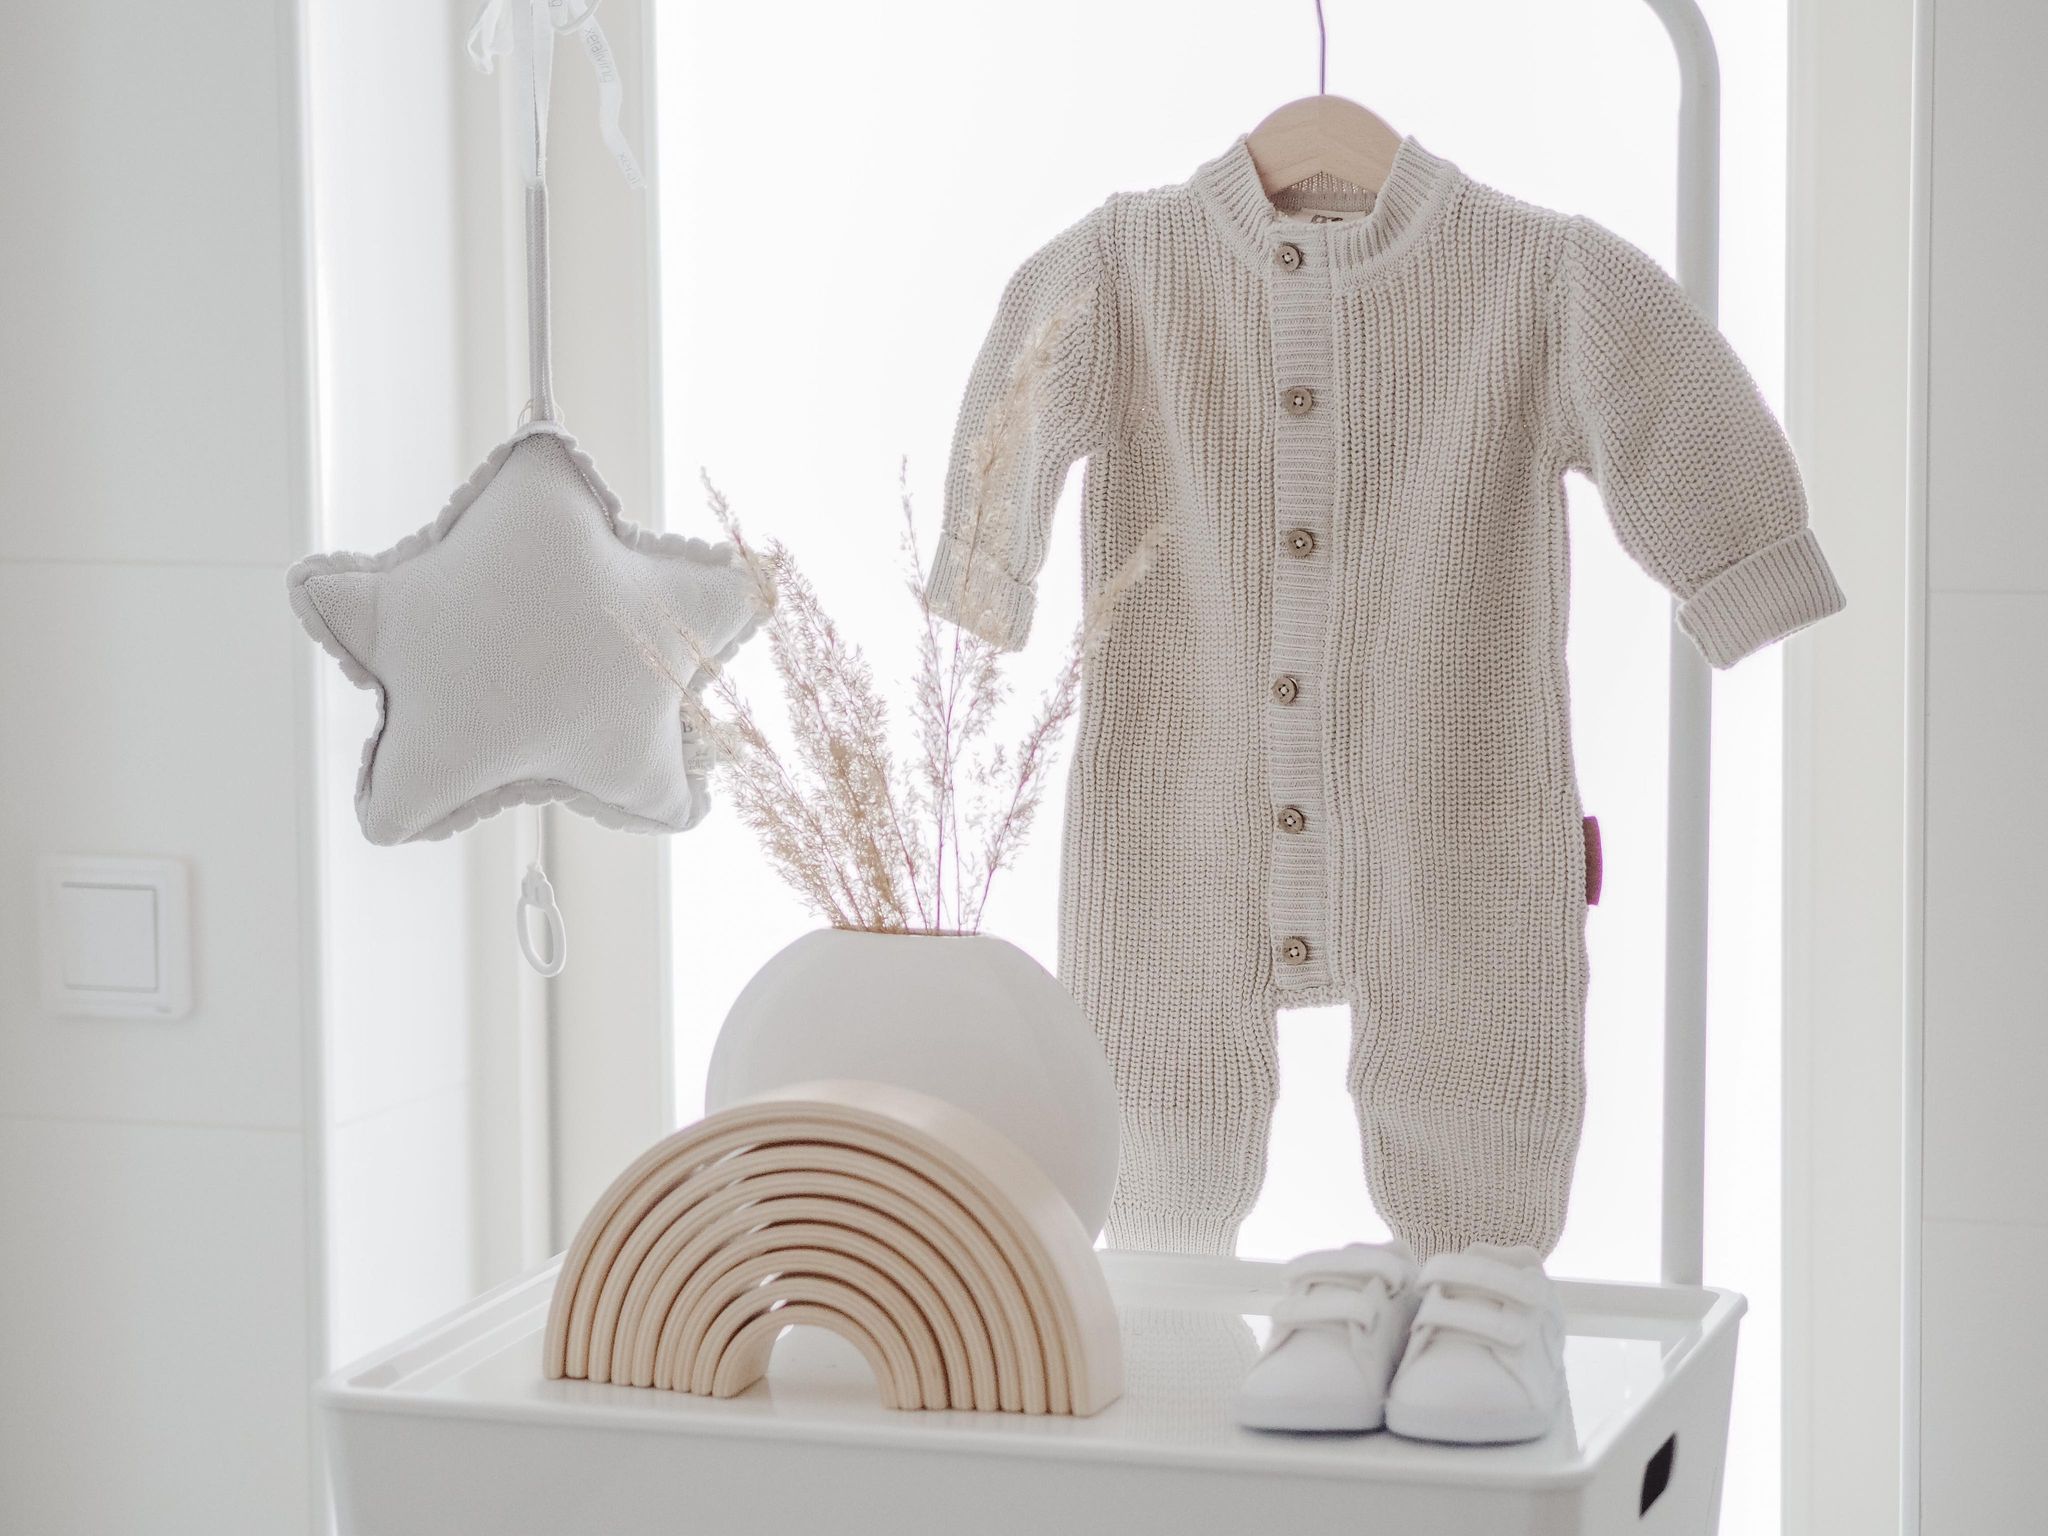 Baby’s Only Soul vauvan neulehaalari, sävy Warm Linen Tässä ajattoman kauniinsävyisessä neulehaalarissa on vetoketju, piilonepparikiinitys edessä ja päällä koristenapit. Vetoketju nopeuttaa pukemista. Hihoissa ja lahkeissa on resorit, jotka auttavat pitämään vauvan paremmin lämpöisenä ja lisäävät myös haalarin käyttöikää. Tämäntyyppinen neulehaalari on mukava vaate vauvalle, koska se ei purista mahan kohdalta, kuten jotkin housut ja vyötärönauhat saattavat tehdä. Vauva on myös helppo nostaa syliin kun hänellä on päällään neulehaalari: se ei nouse ikävästi kainaloihin tai jää ruttuun.